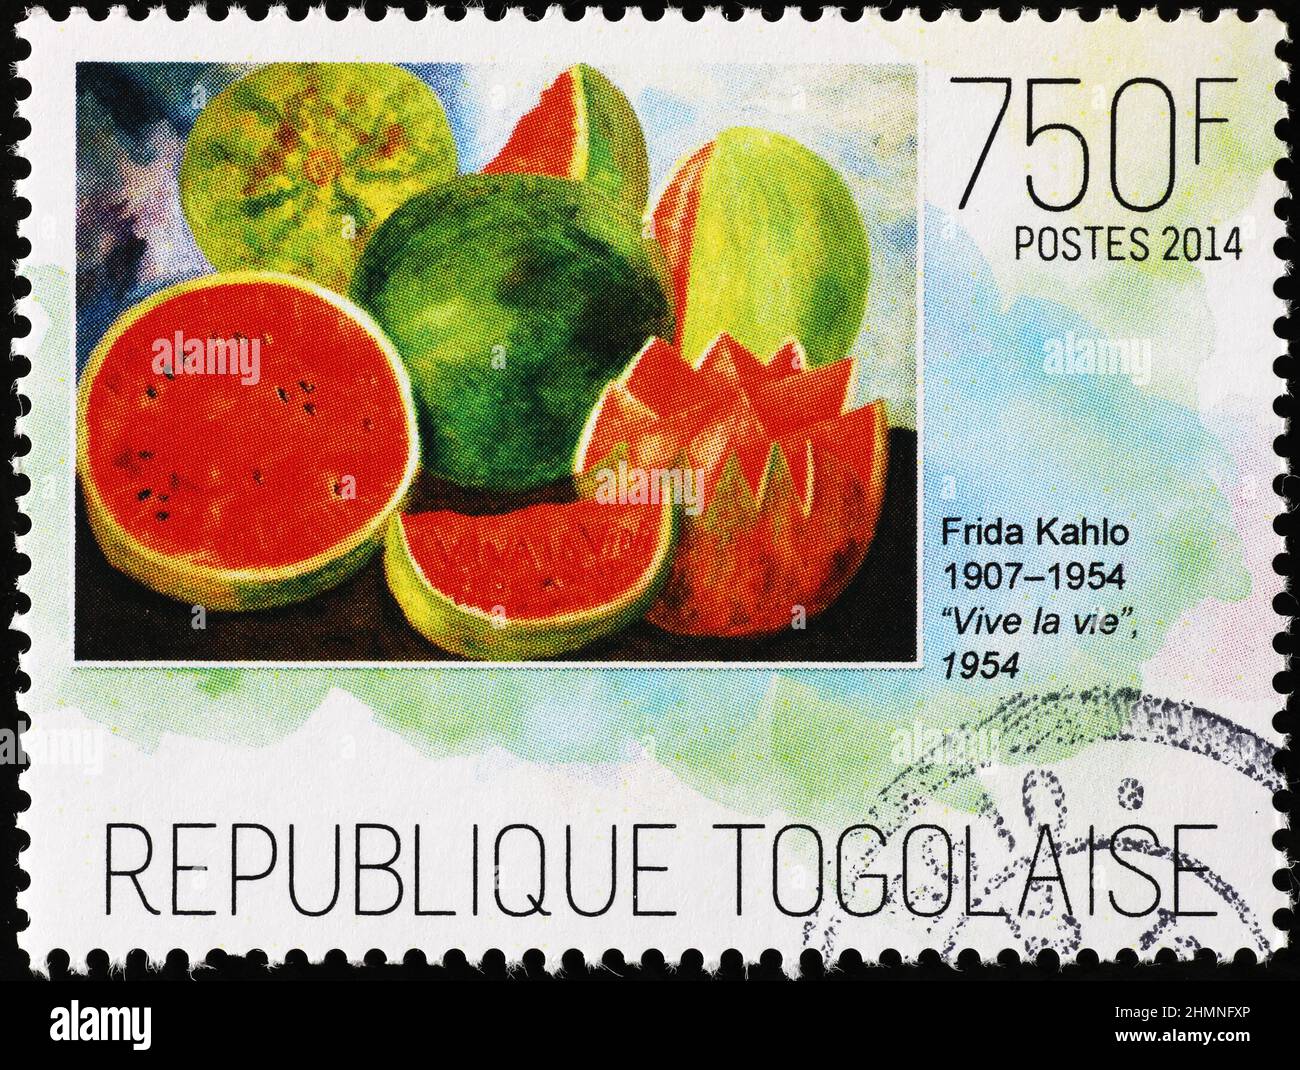 Viva la vida par Frida Kahlo sur le timbre africain Banque D'Images